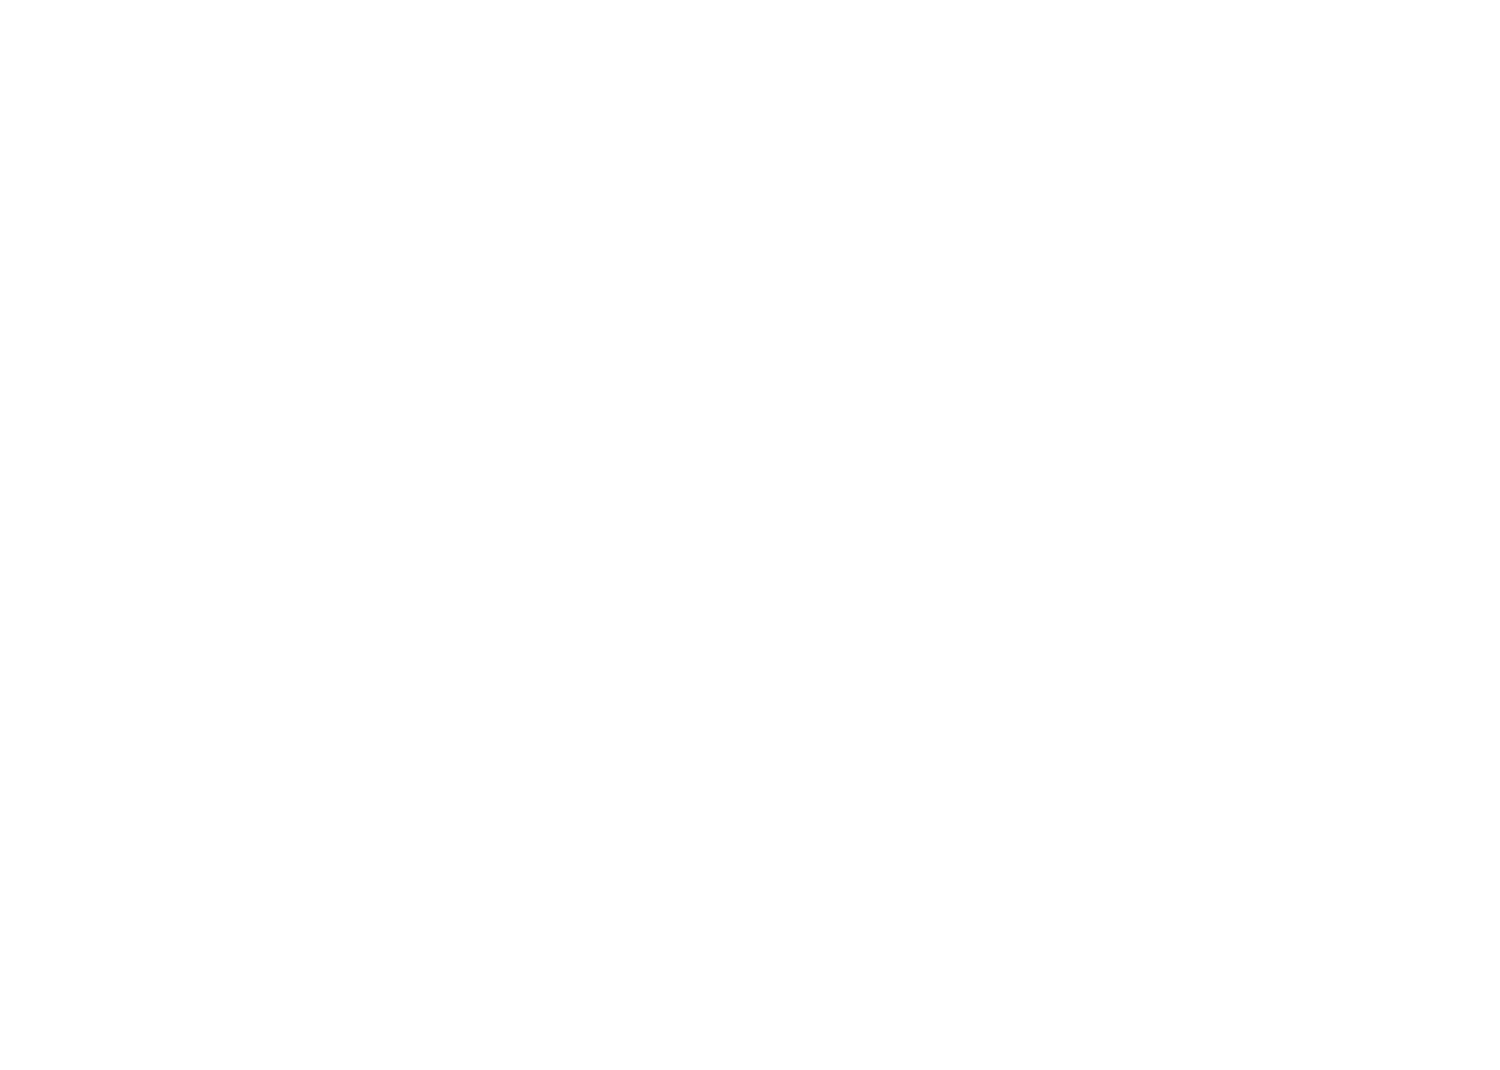 Ghost-Shaped People &mdash; Ryan Muirhead